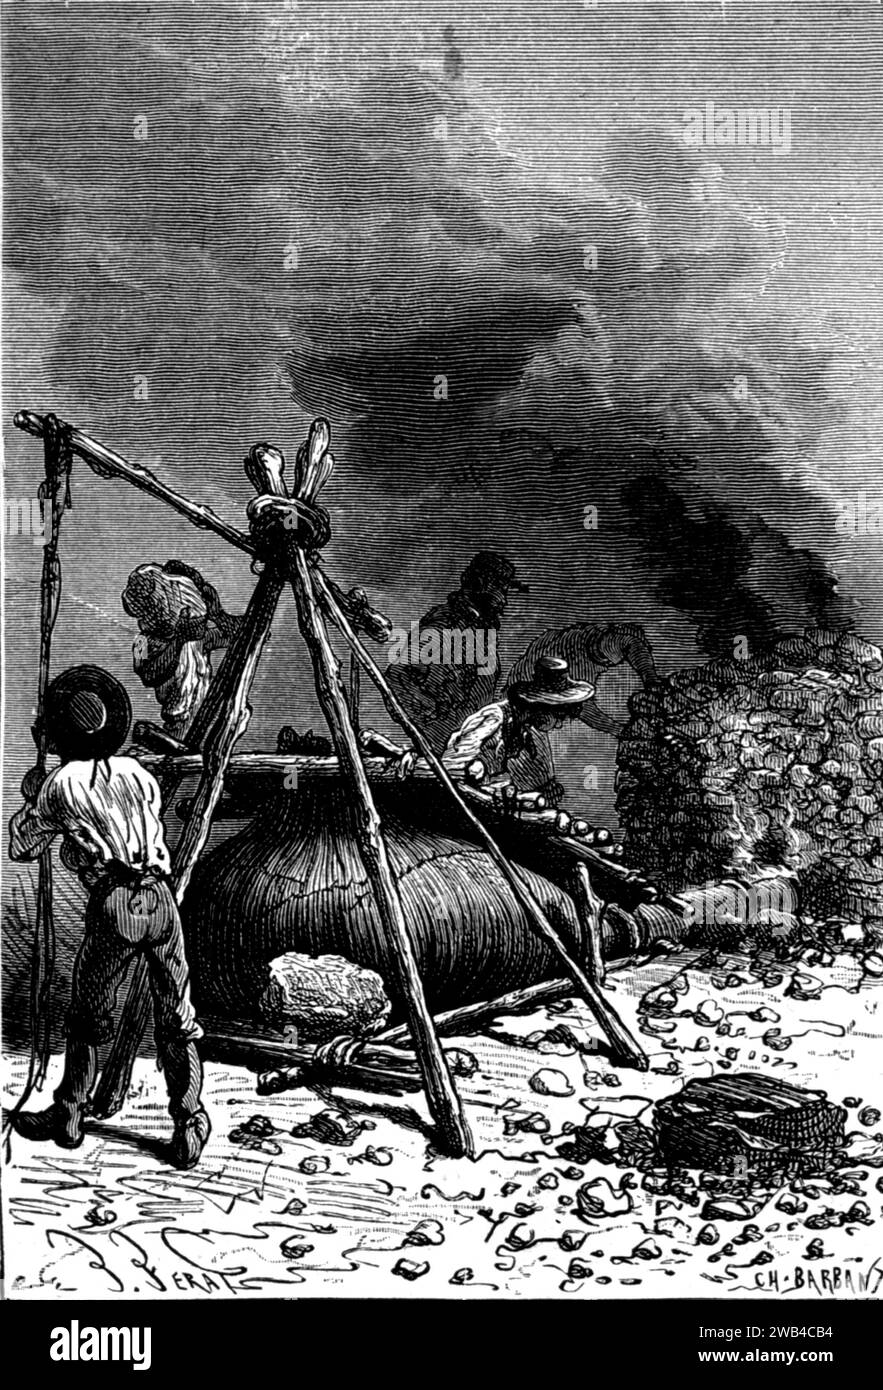 Illustrazione Jules Verne, "l'isola misteriosa" (francese: L'Île mystérieuse): "L'operazione era difficile" Edizioni Hetzel, 1874/1875 Collezione privata Foto Stock